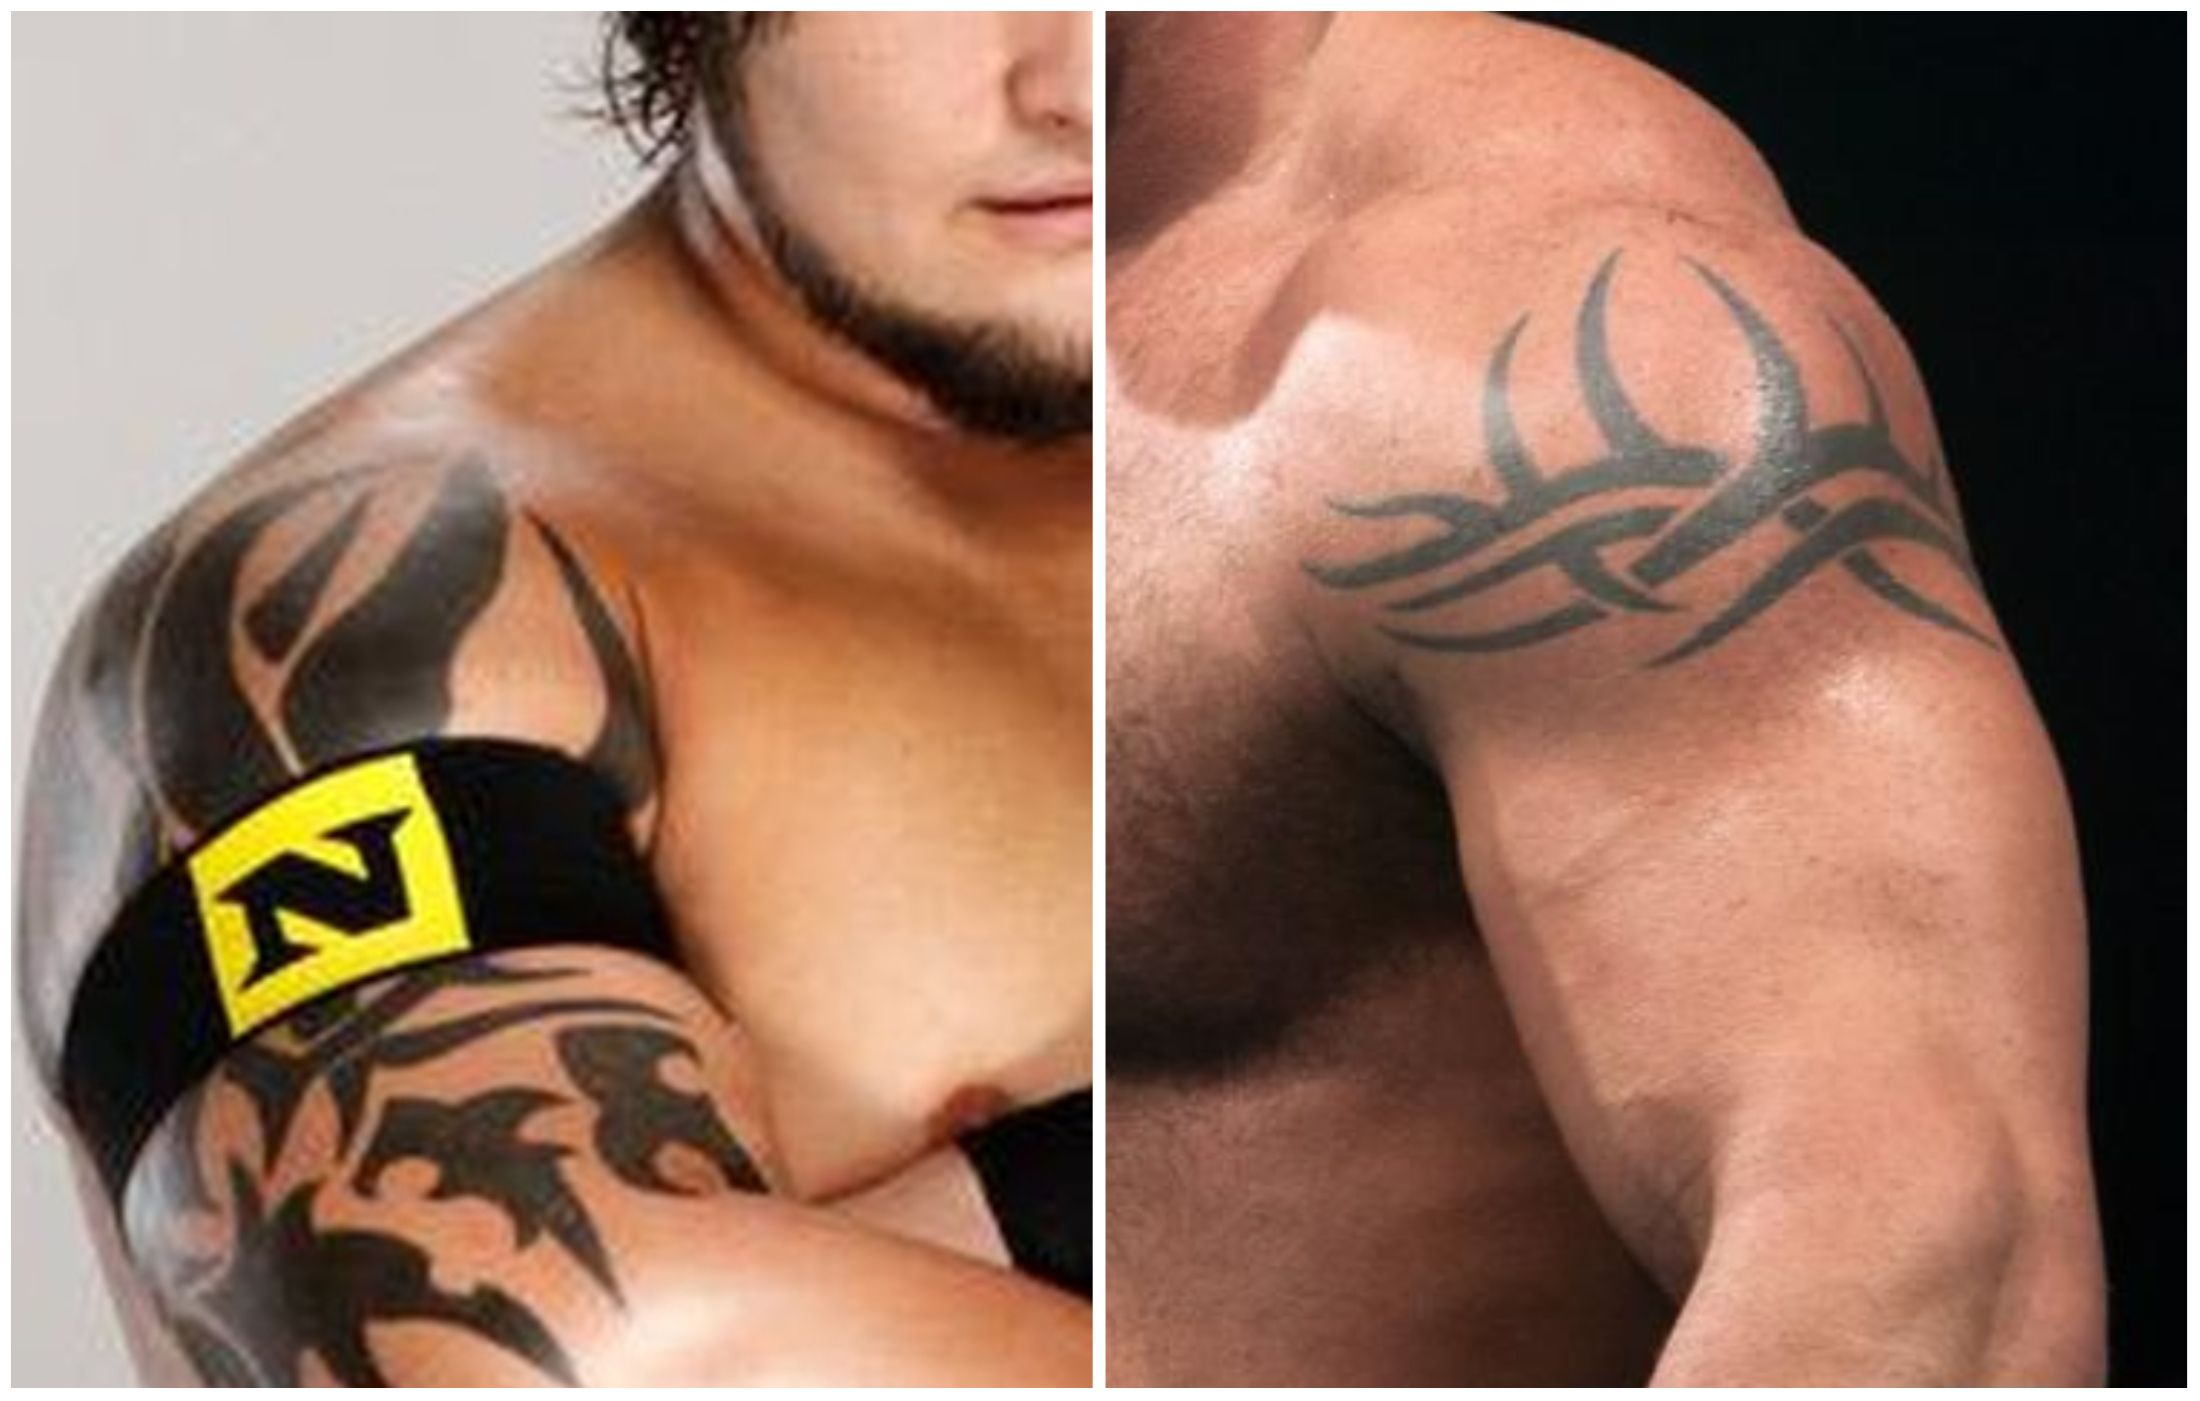 Bray Wyatt got a tattoo inspired by Goldberg